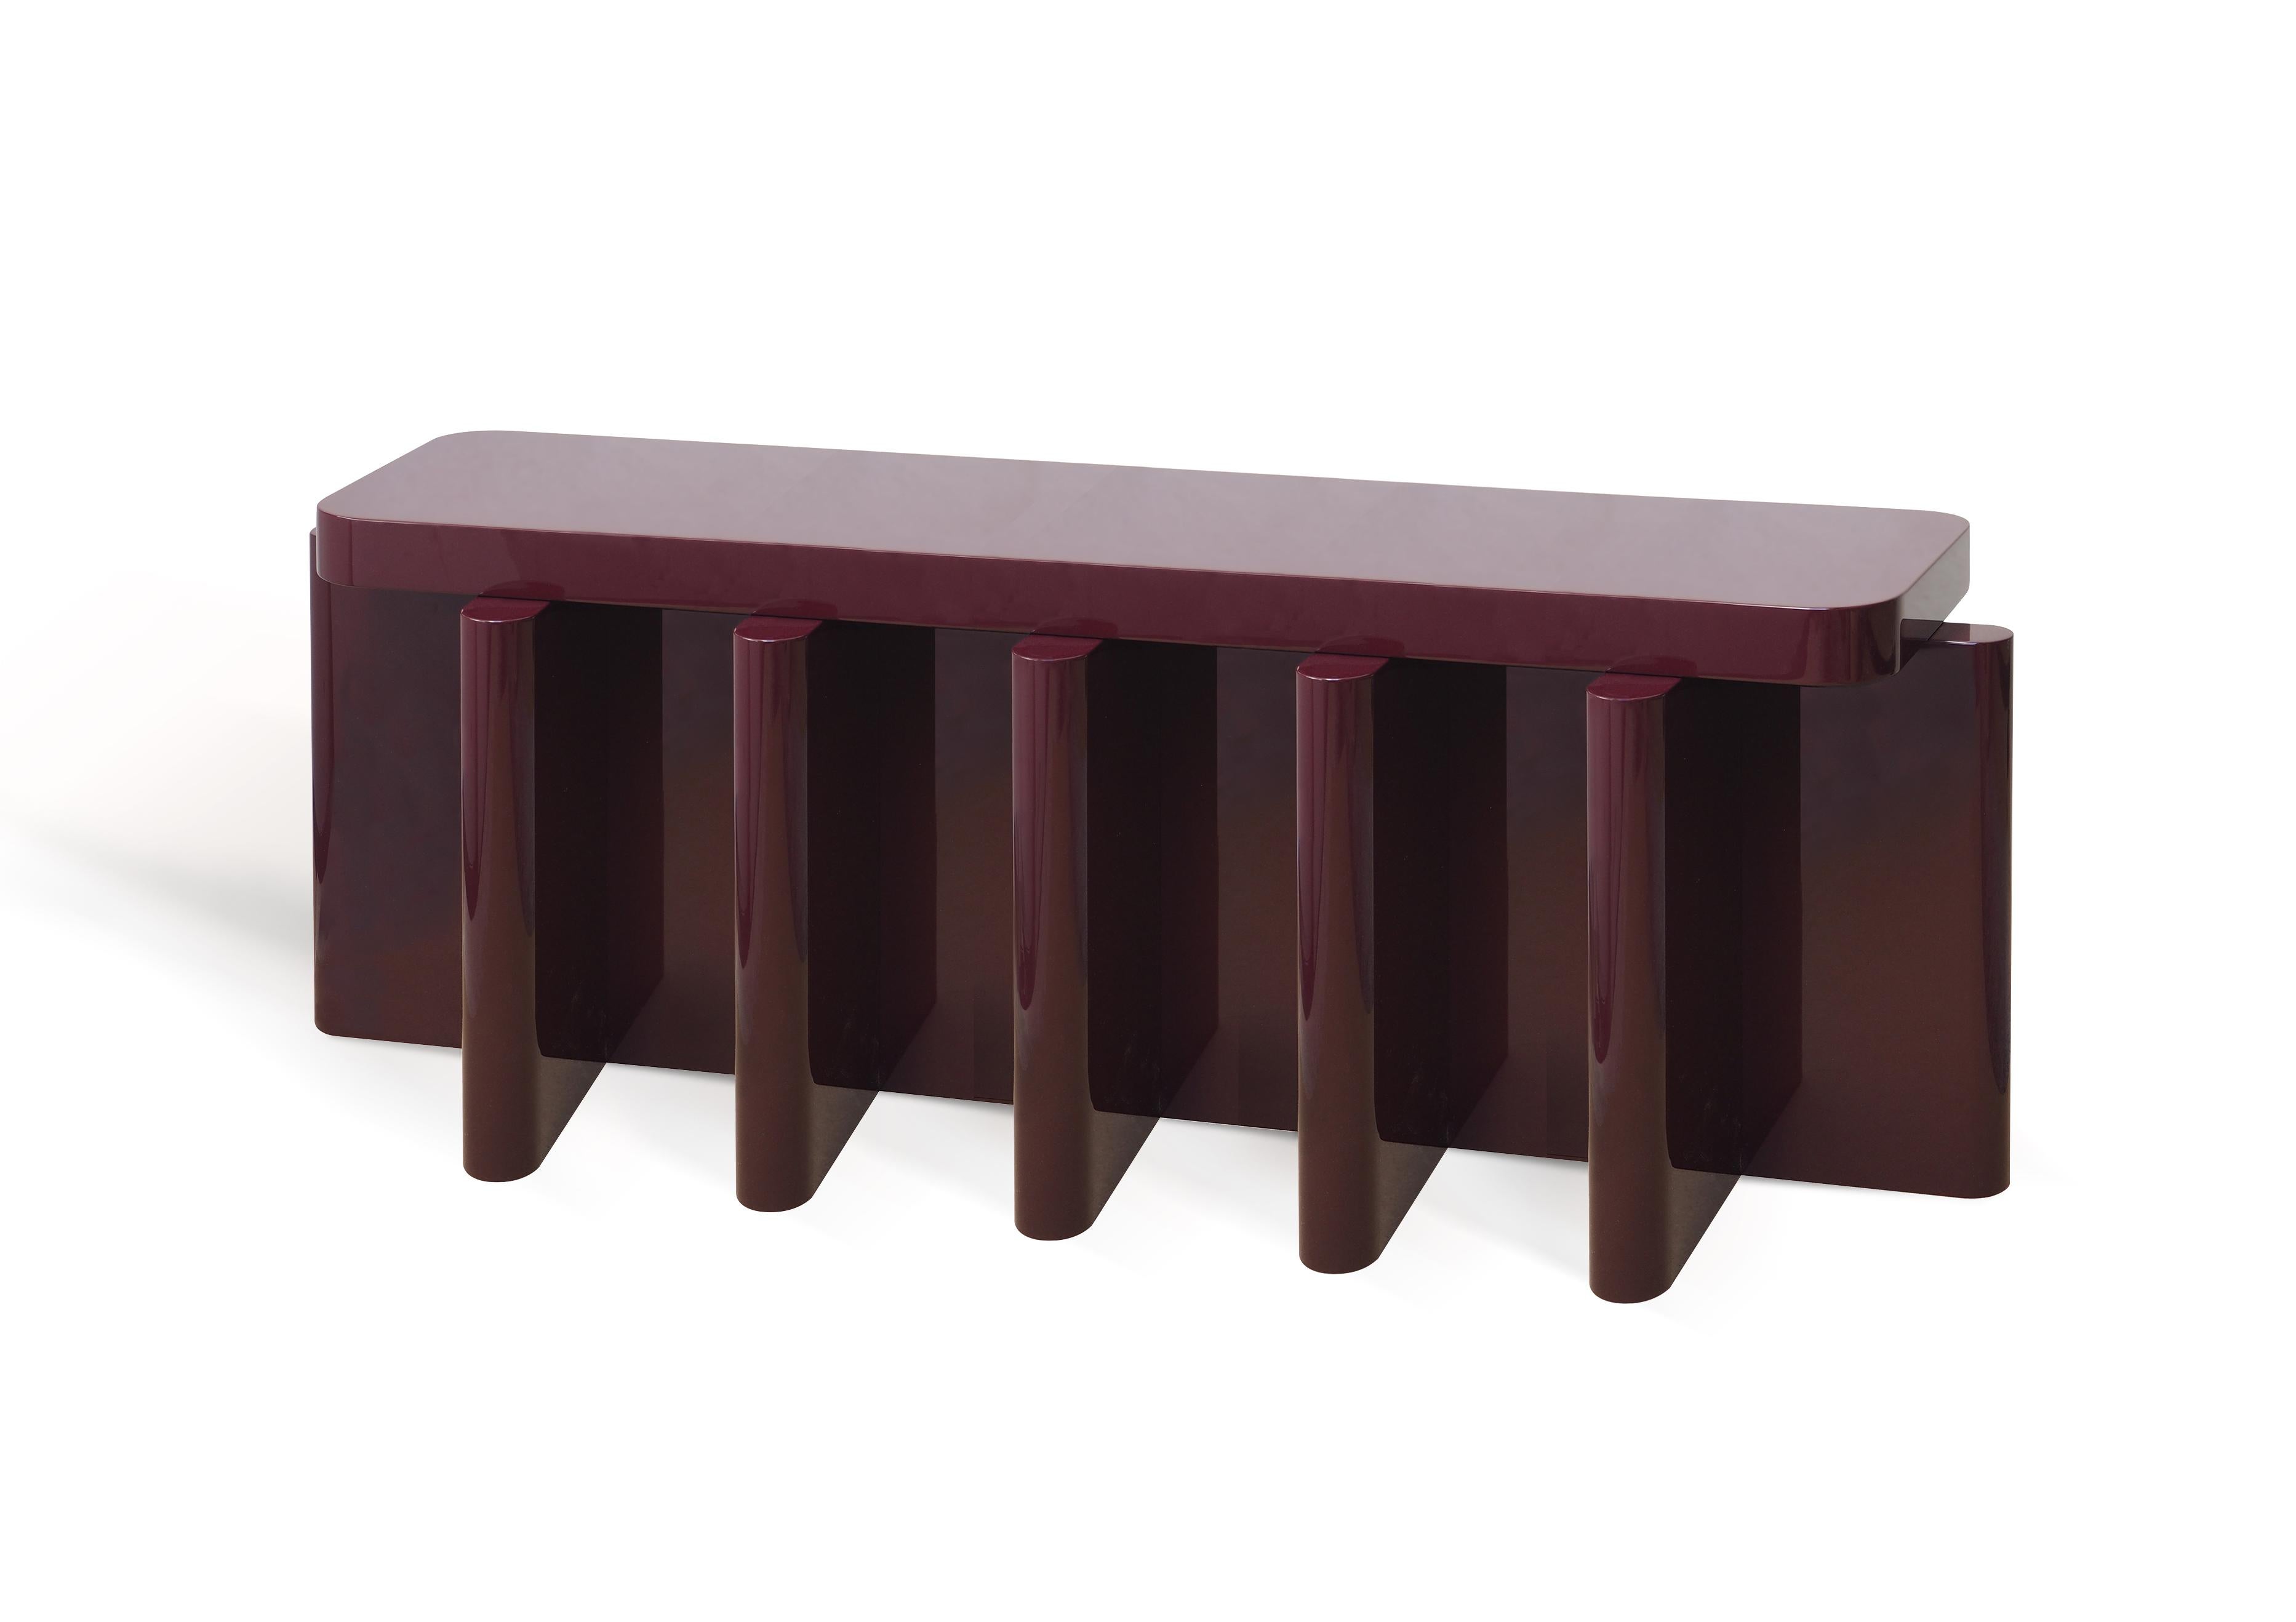 Spina est une collection de tables, de sièges et de consoles caractérisée par une base squelettique dense qui soutient un plan horizontal plus petit le long de son axe.

Les épaisseurs et les proportions des plans verticaux qui se croisent